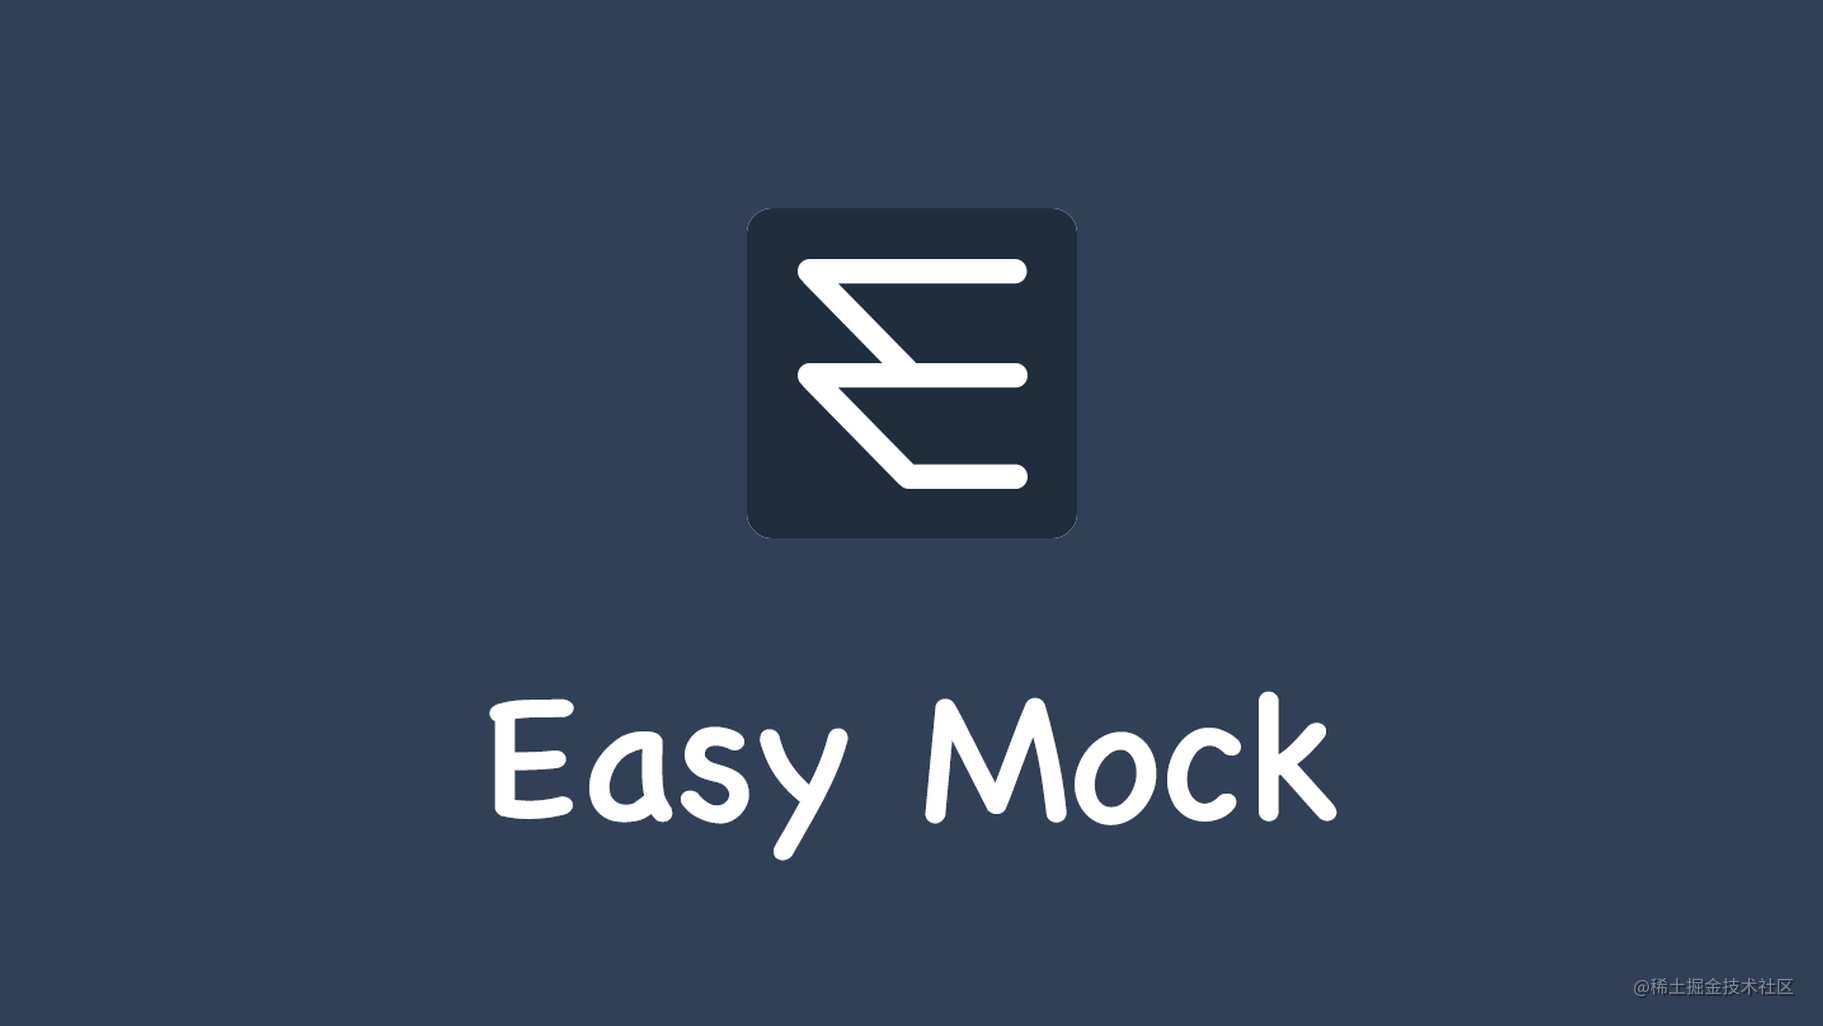 数据模拟神器 easy-mock 正式开源